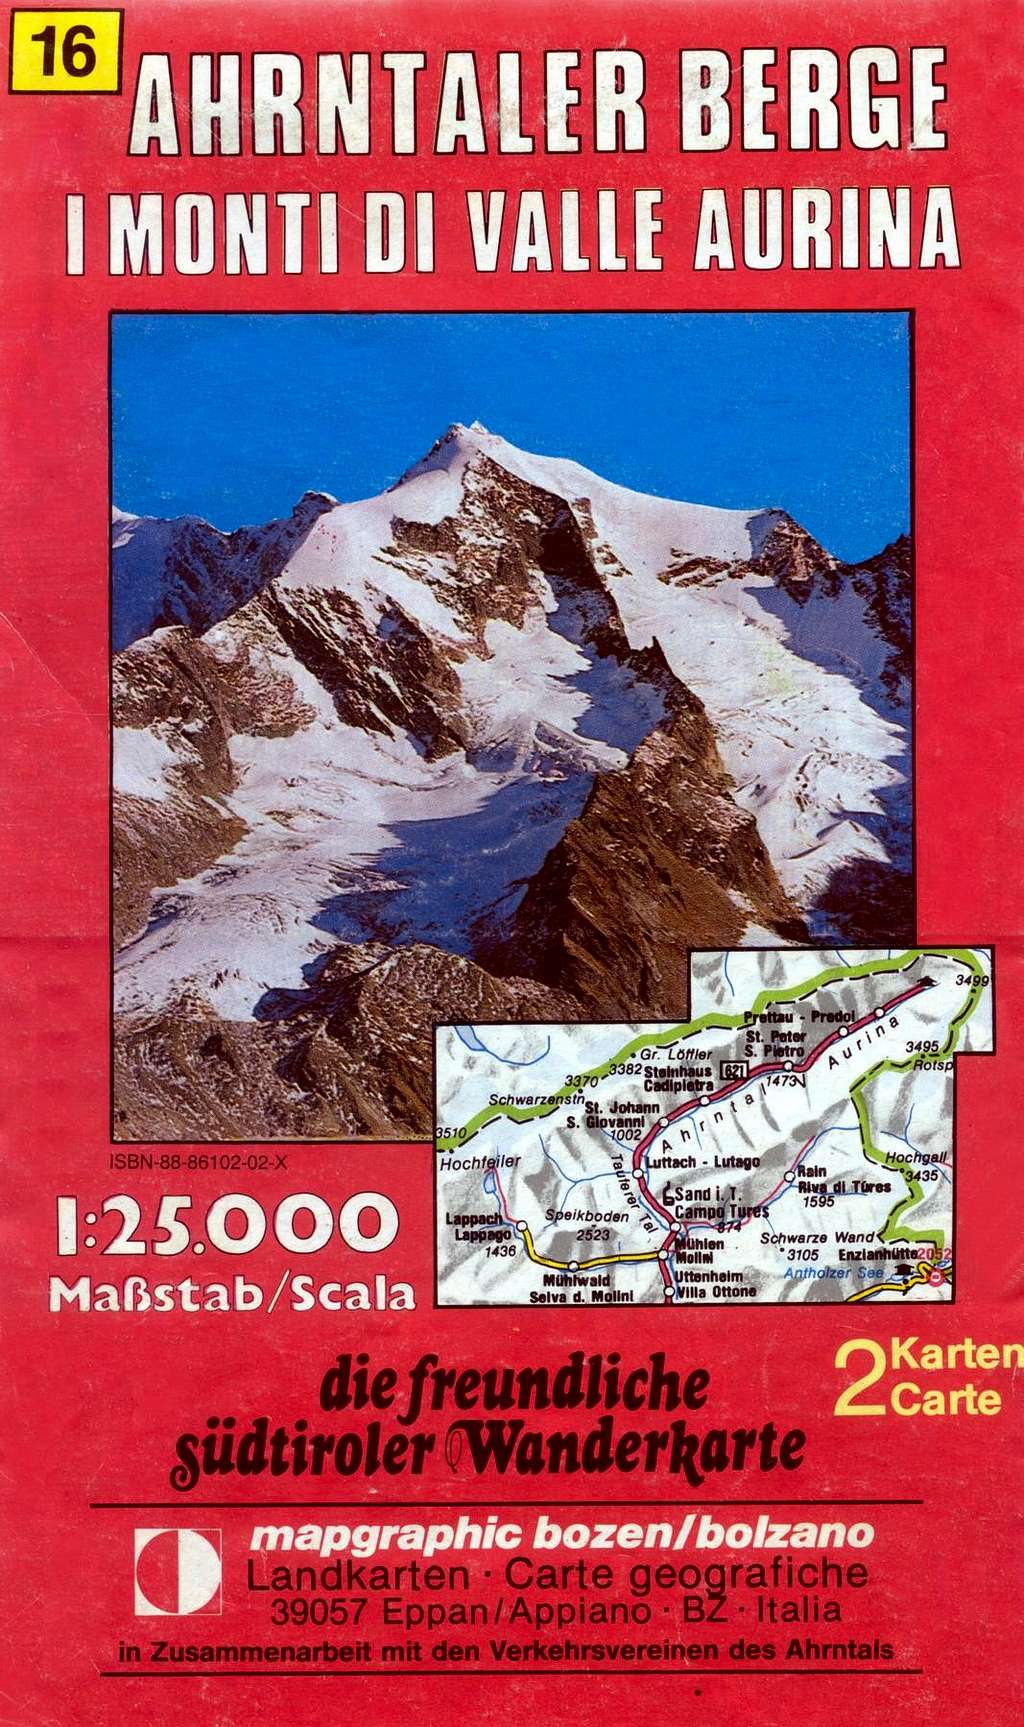 Ahrntaler Berge map